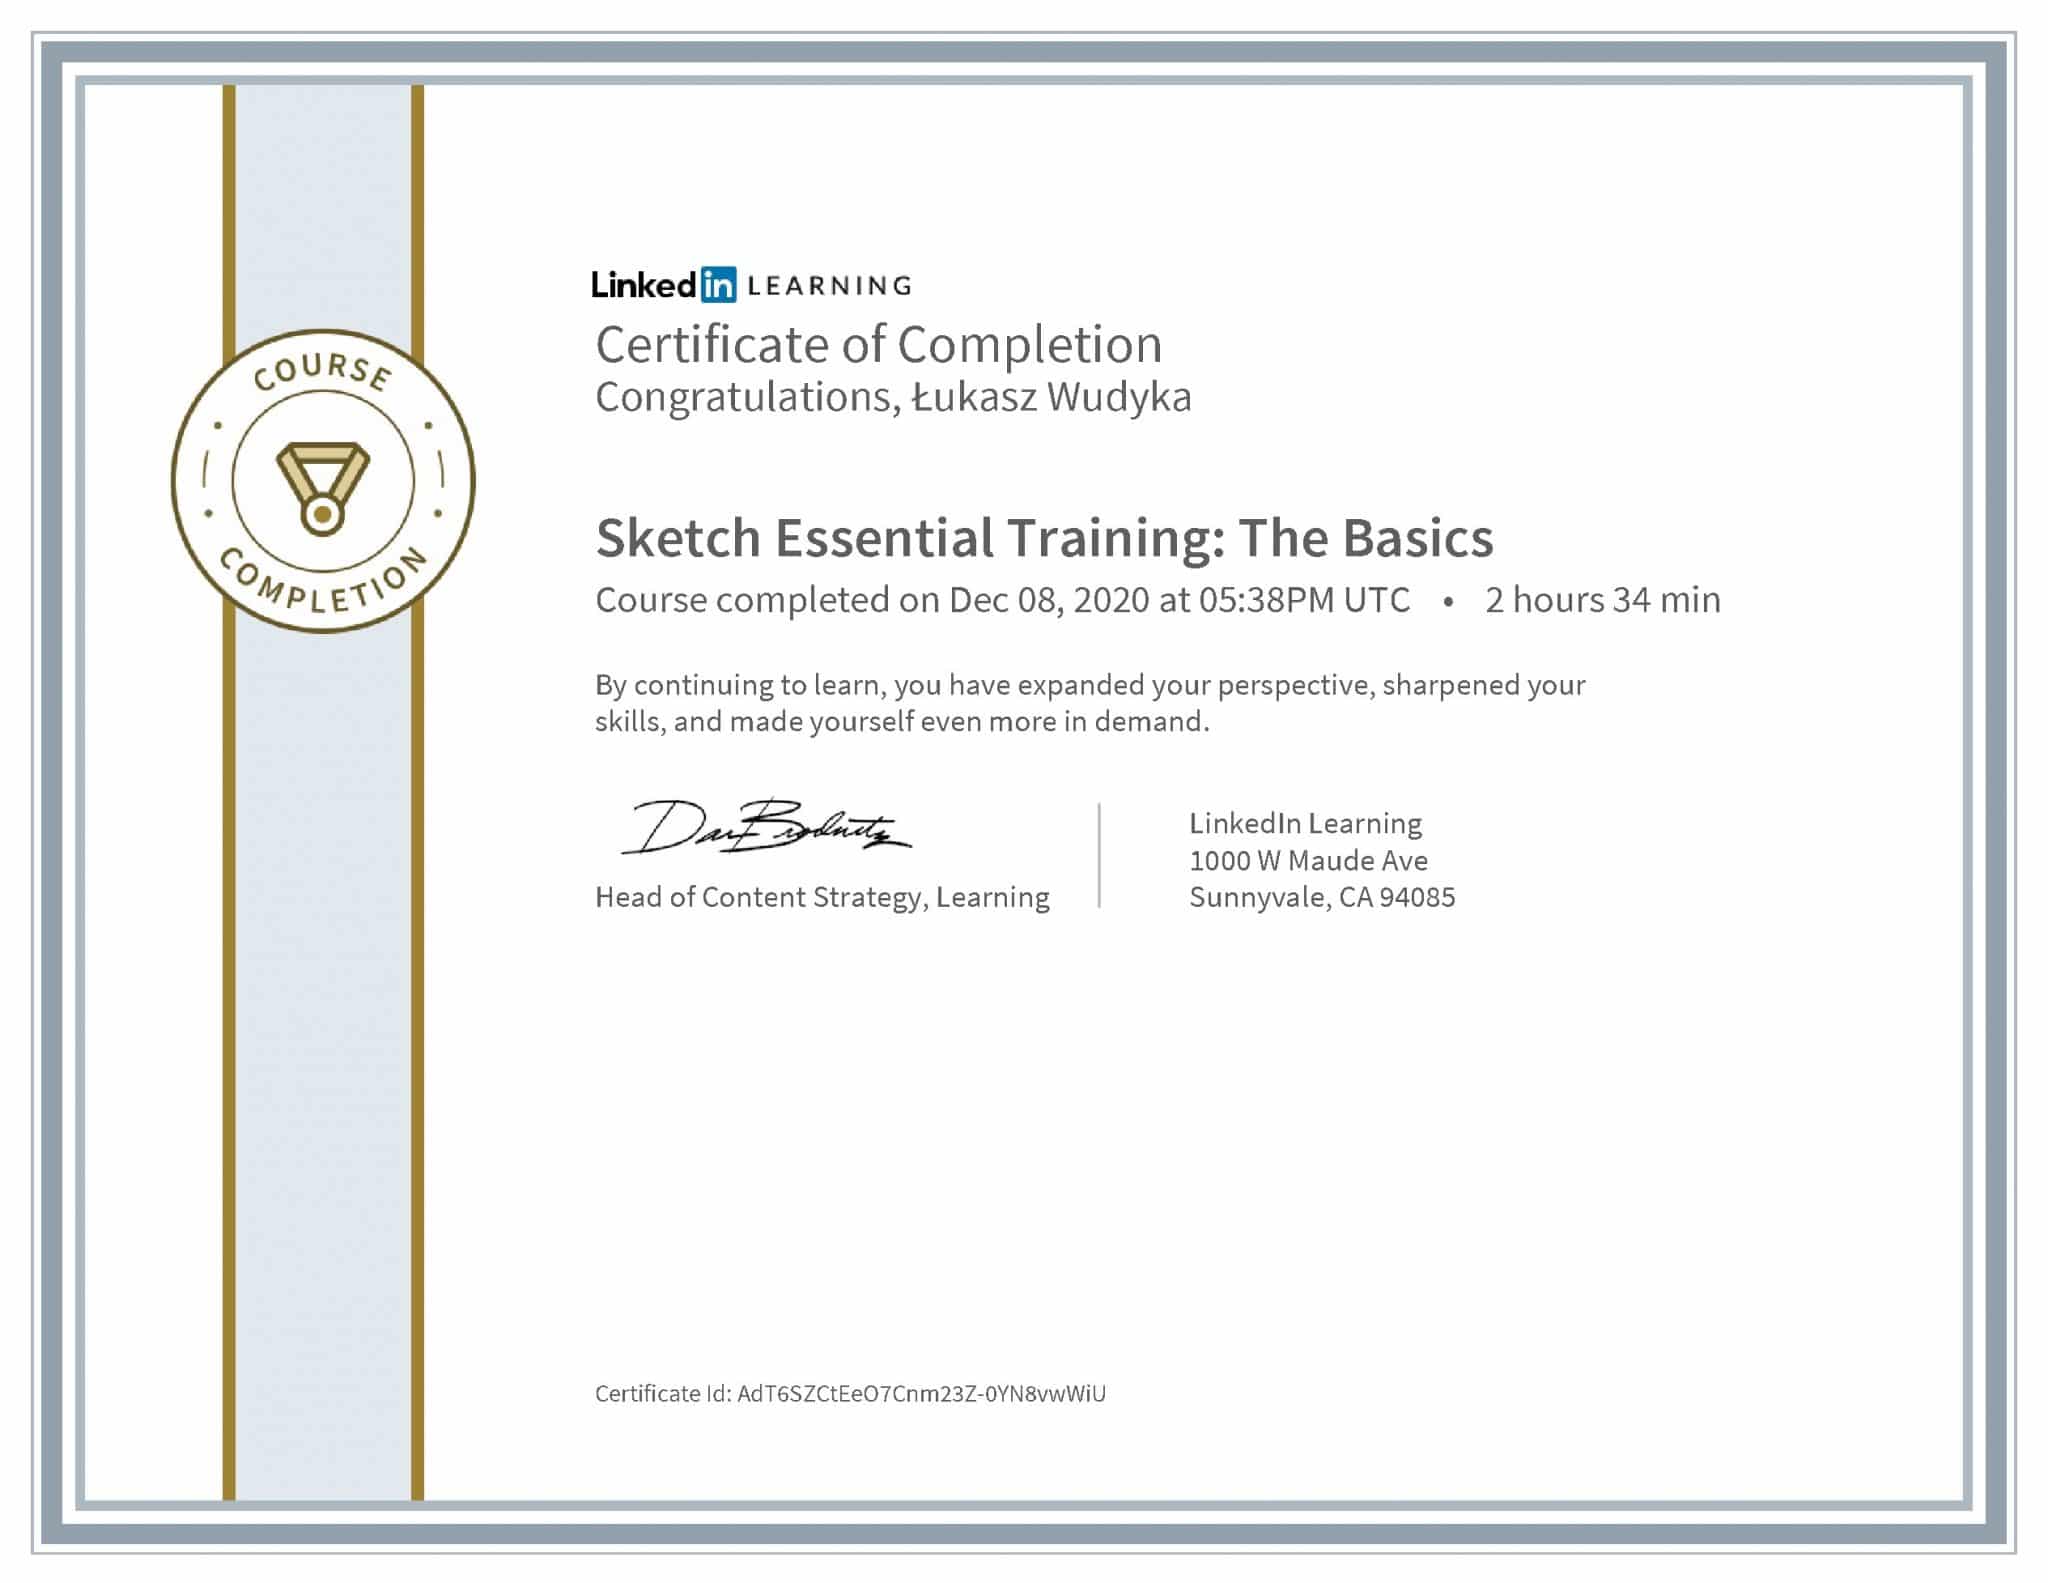 Łukasz Wudyka certyfikat LinkedIn Sketch Essential Training: The Basics